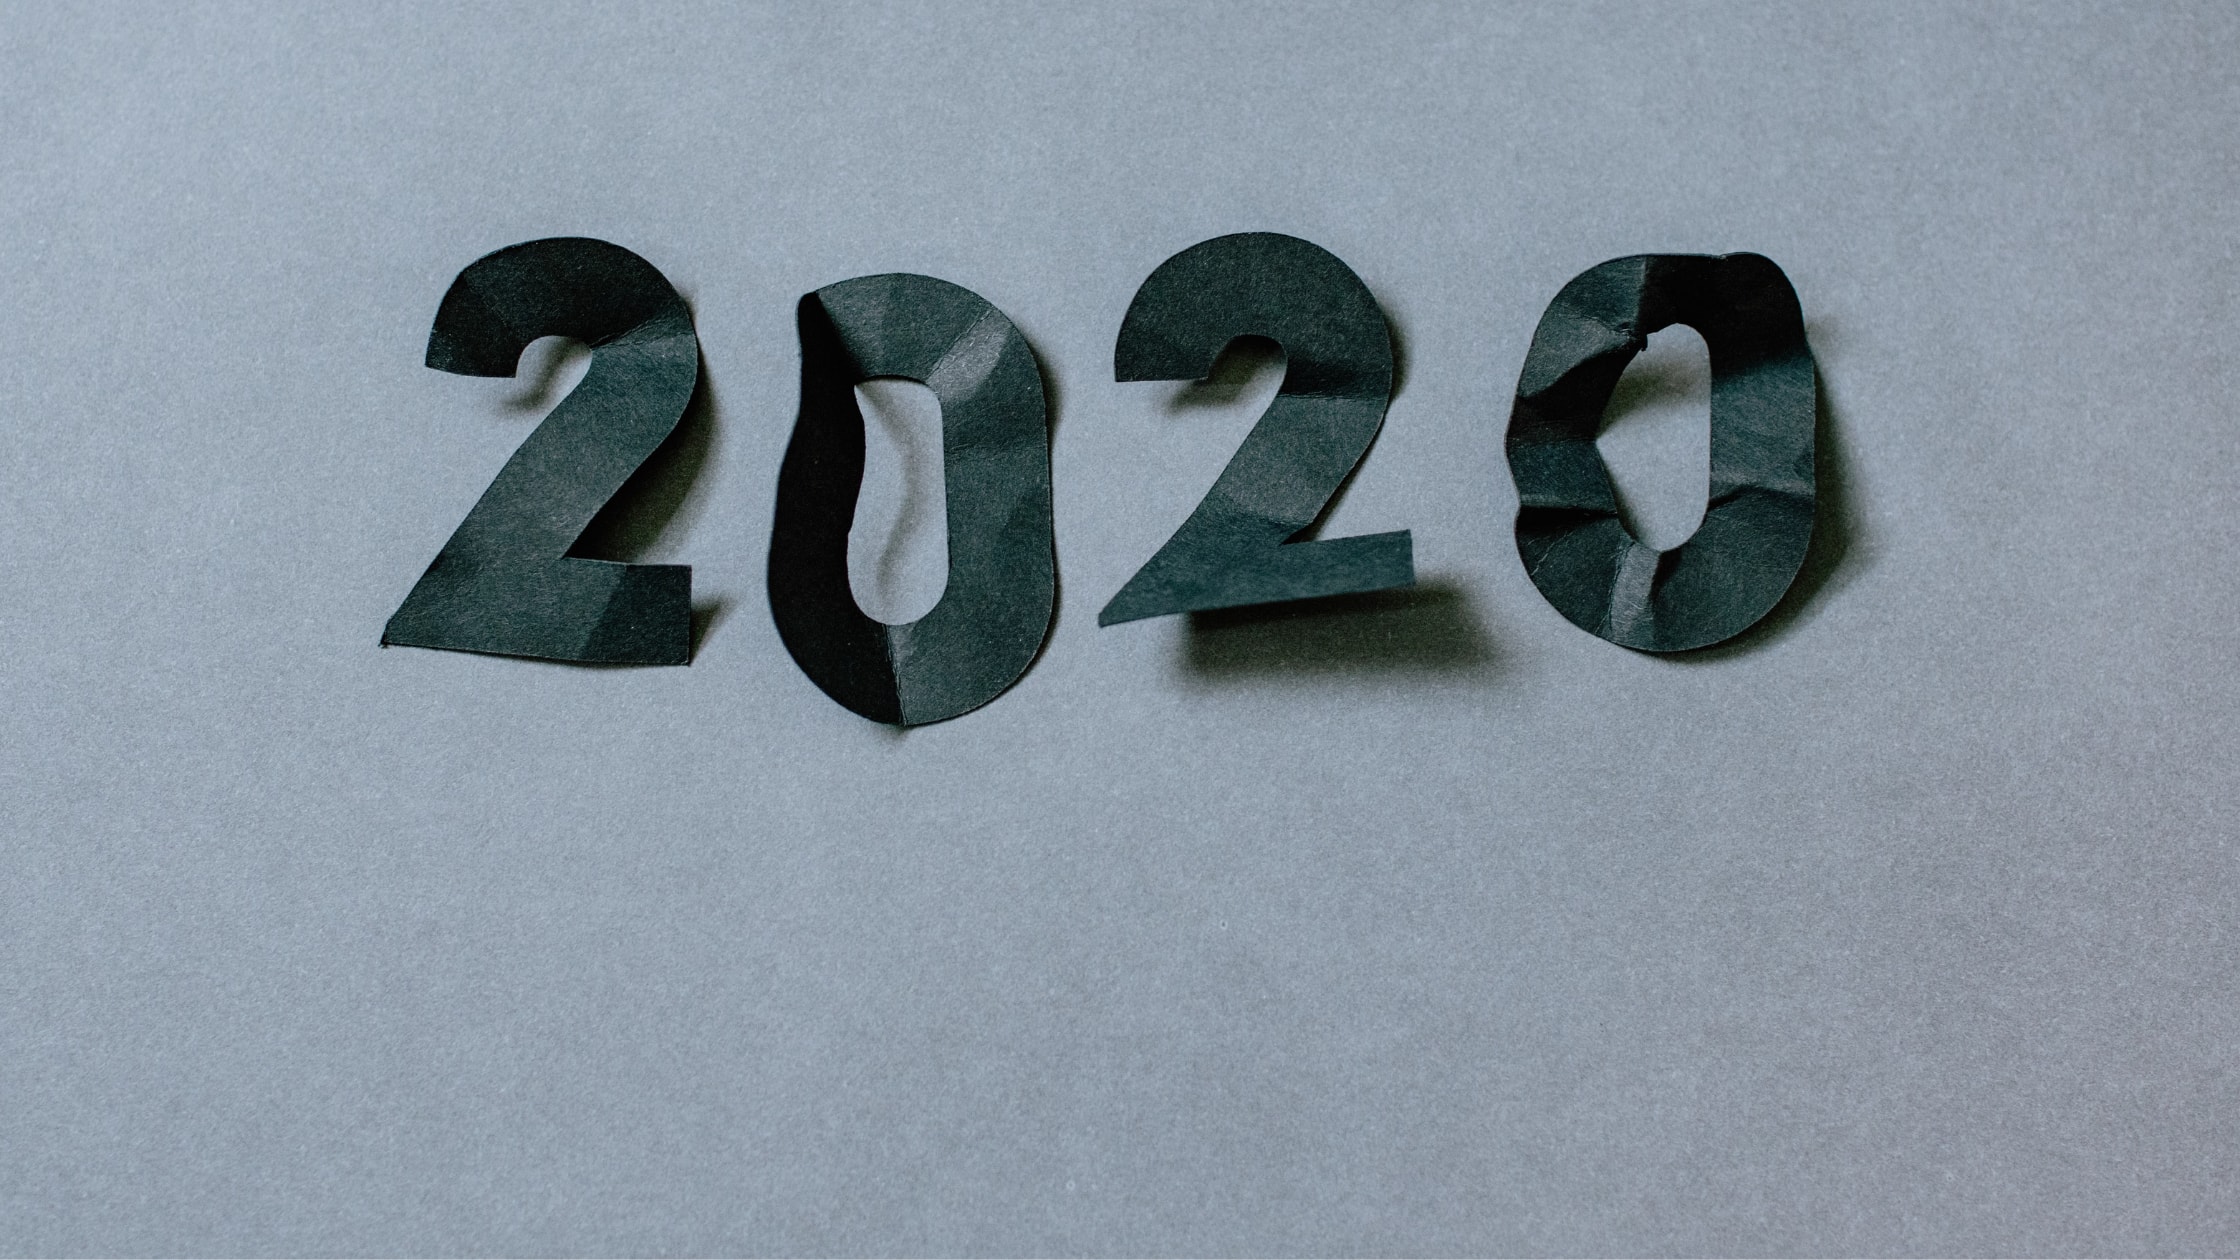 2020 written against grey background